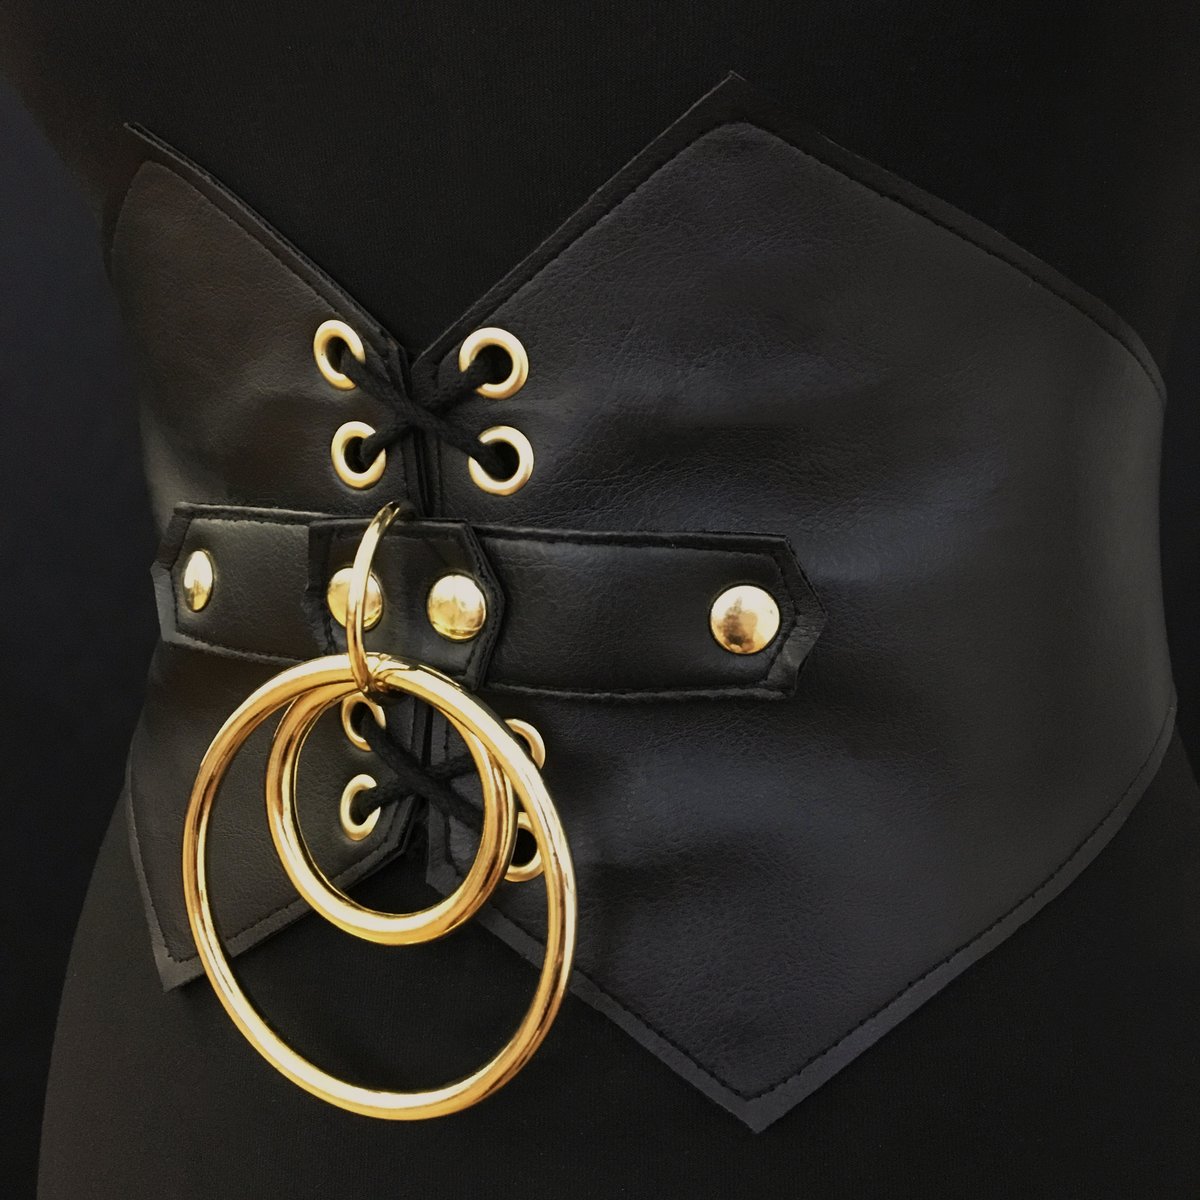 Infinity waist belt cincher 